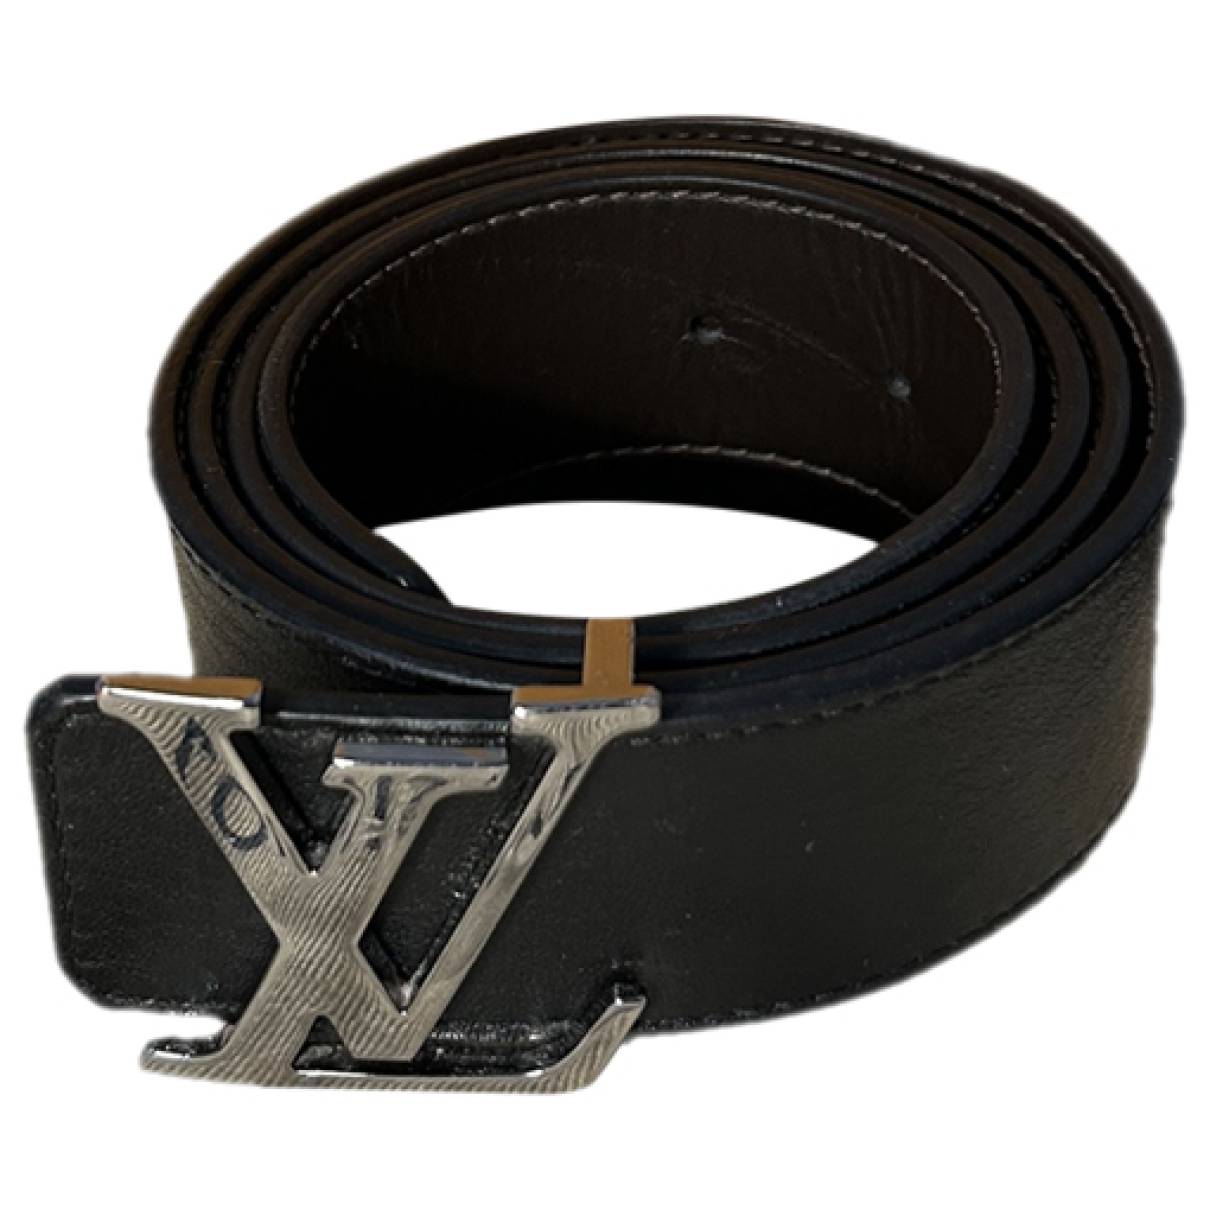 white lv belt black buckle